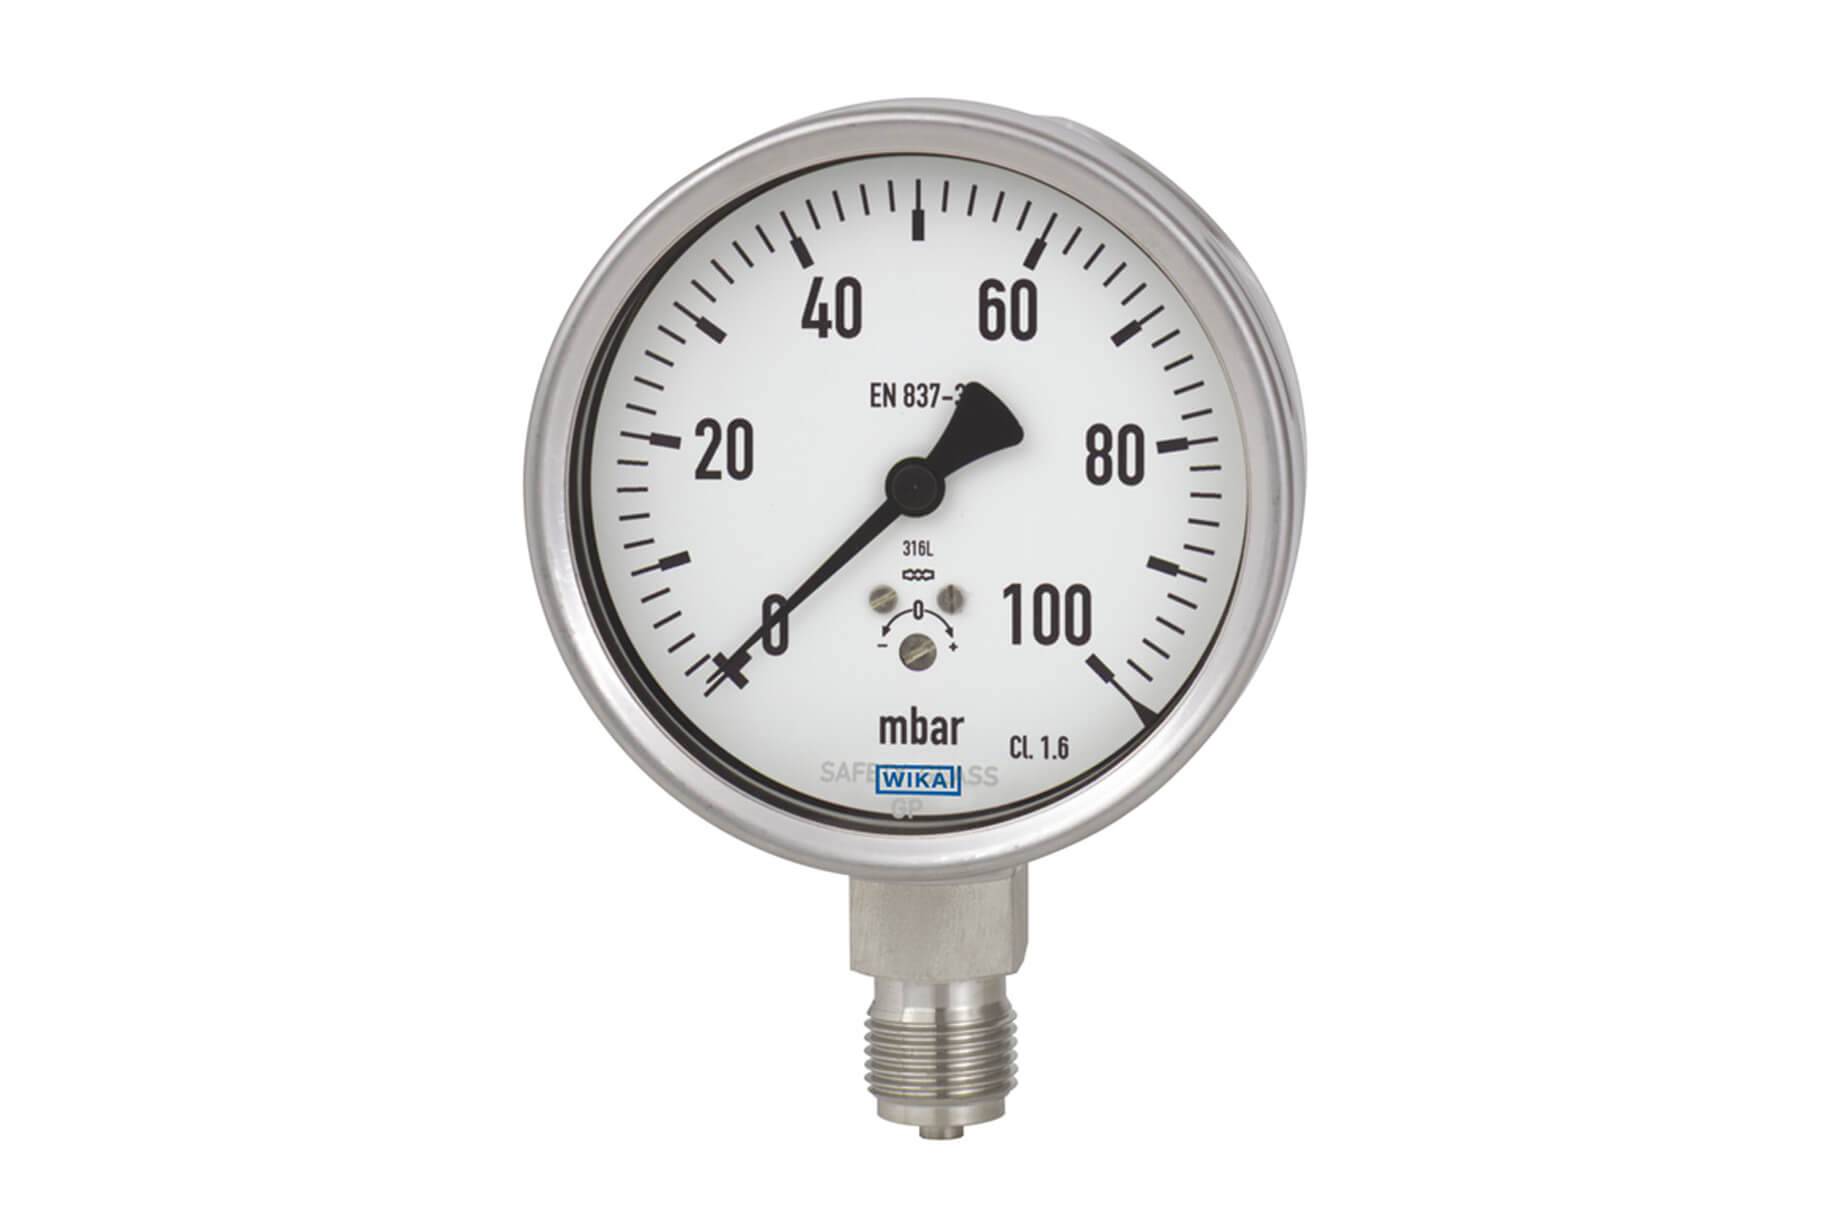 Жидкостной манометр для измерения давления газа - отопление и водоснабжение - нюансы, которые надо знать